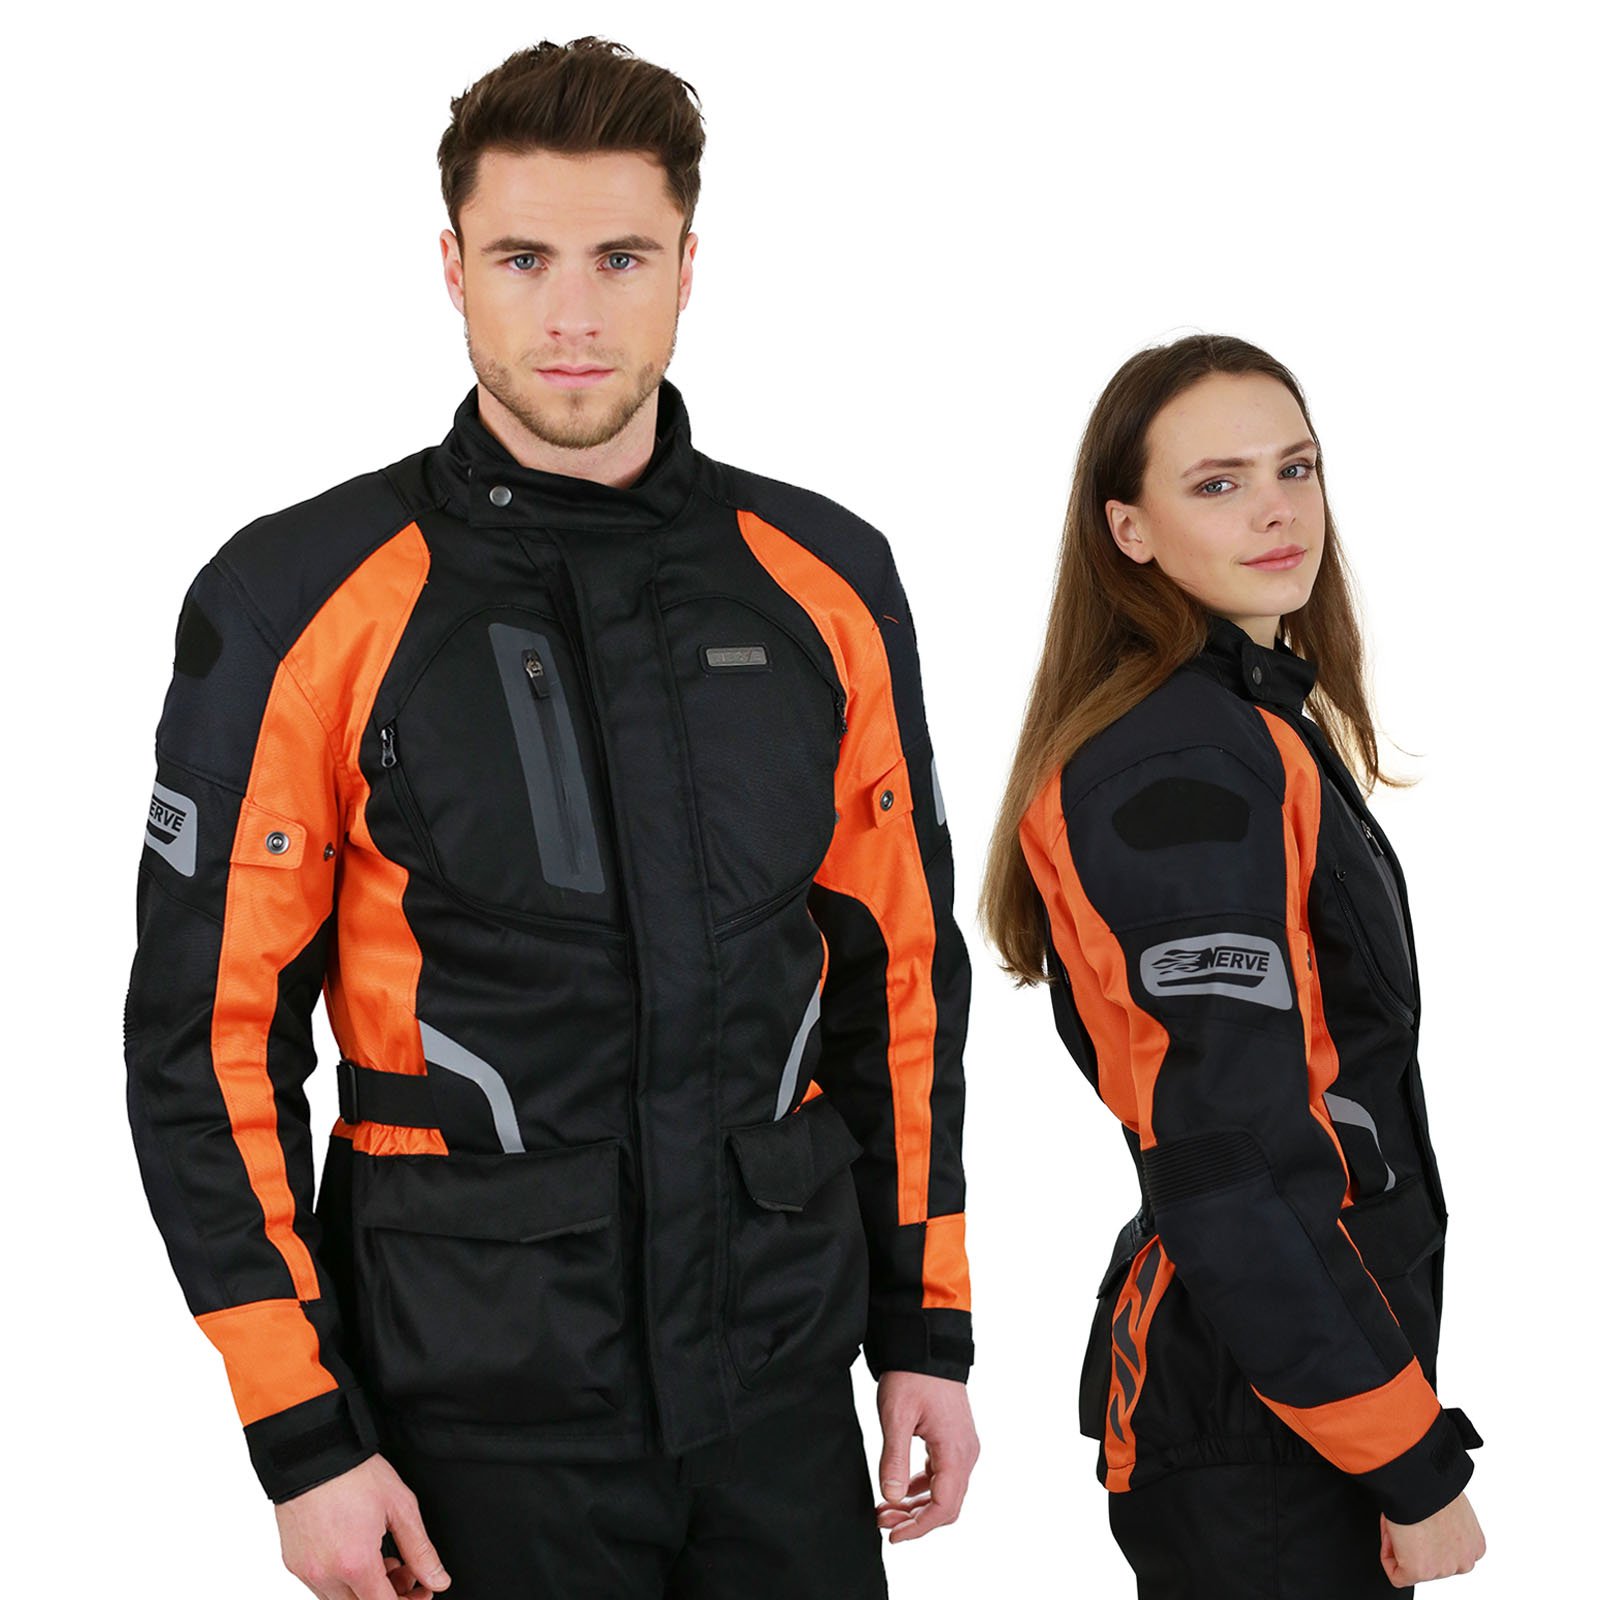 Nerve Shop Motorradjacke -Spark- Sommer Winter Motorrad Roller Jacke Protektorenjacke Textil Herren Wasserdicht mit Protektoren - Schwarz-Neon-Orange - XL